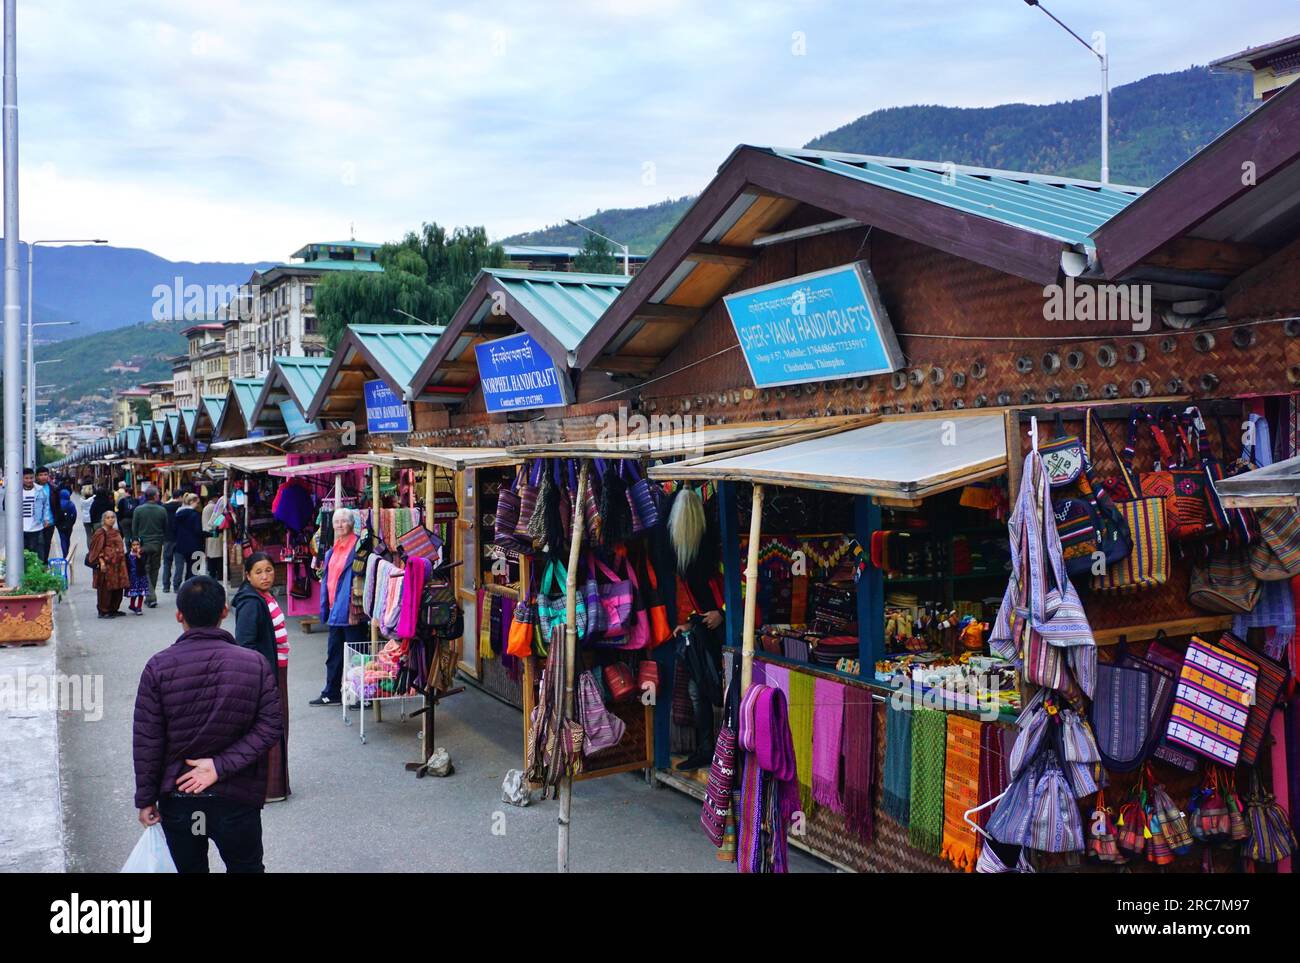 Une rangée de kiosques commerciaux identiques bordent une rue animée de Thimphu, au Bhoutan. Les vendeurs locaux vendent des vêtements, des bijoux, de l'artisanat, des souvenirs et d'autres articles Banque D'Images